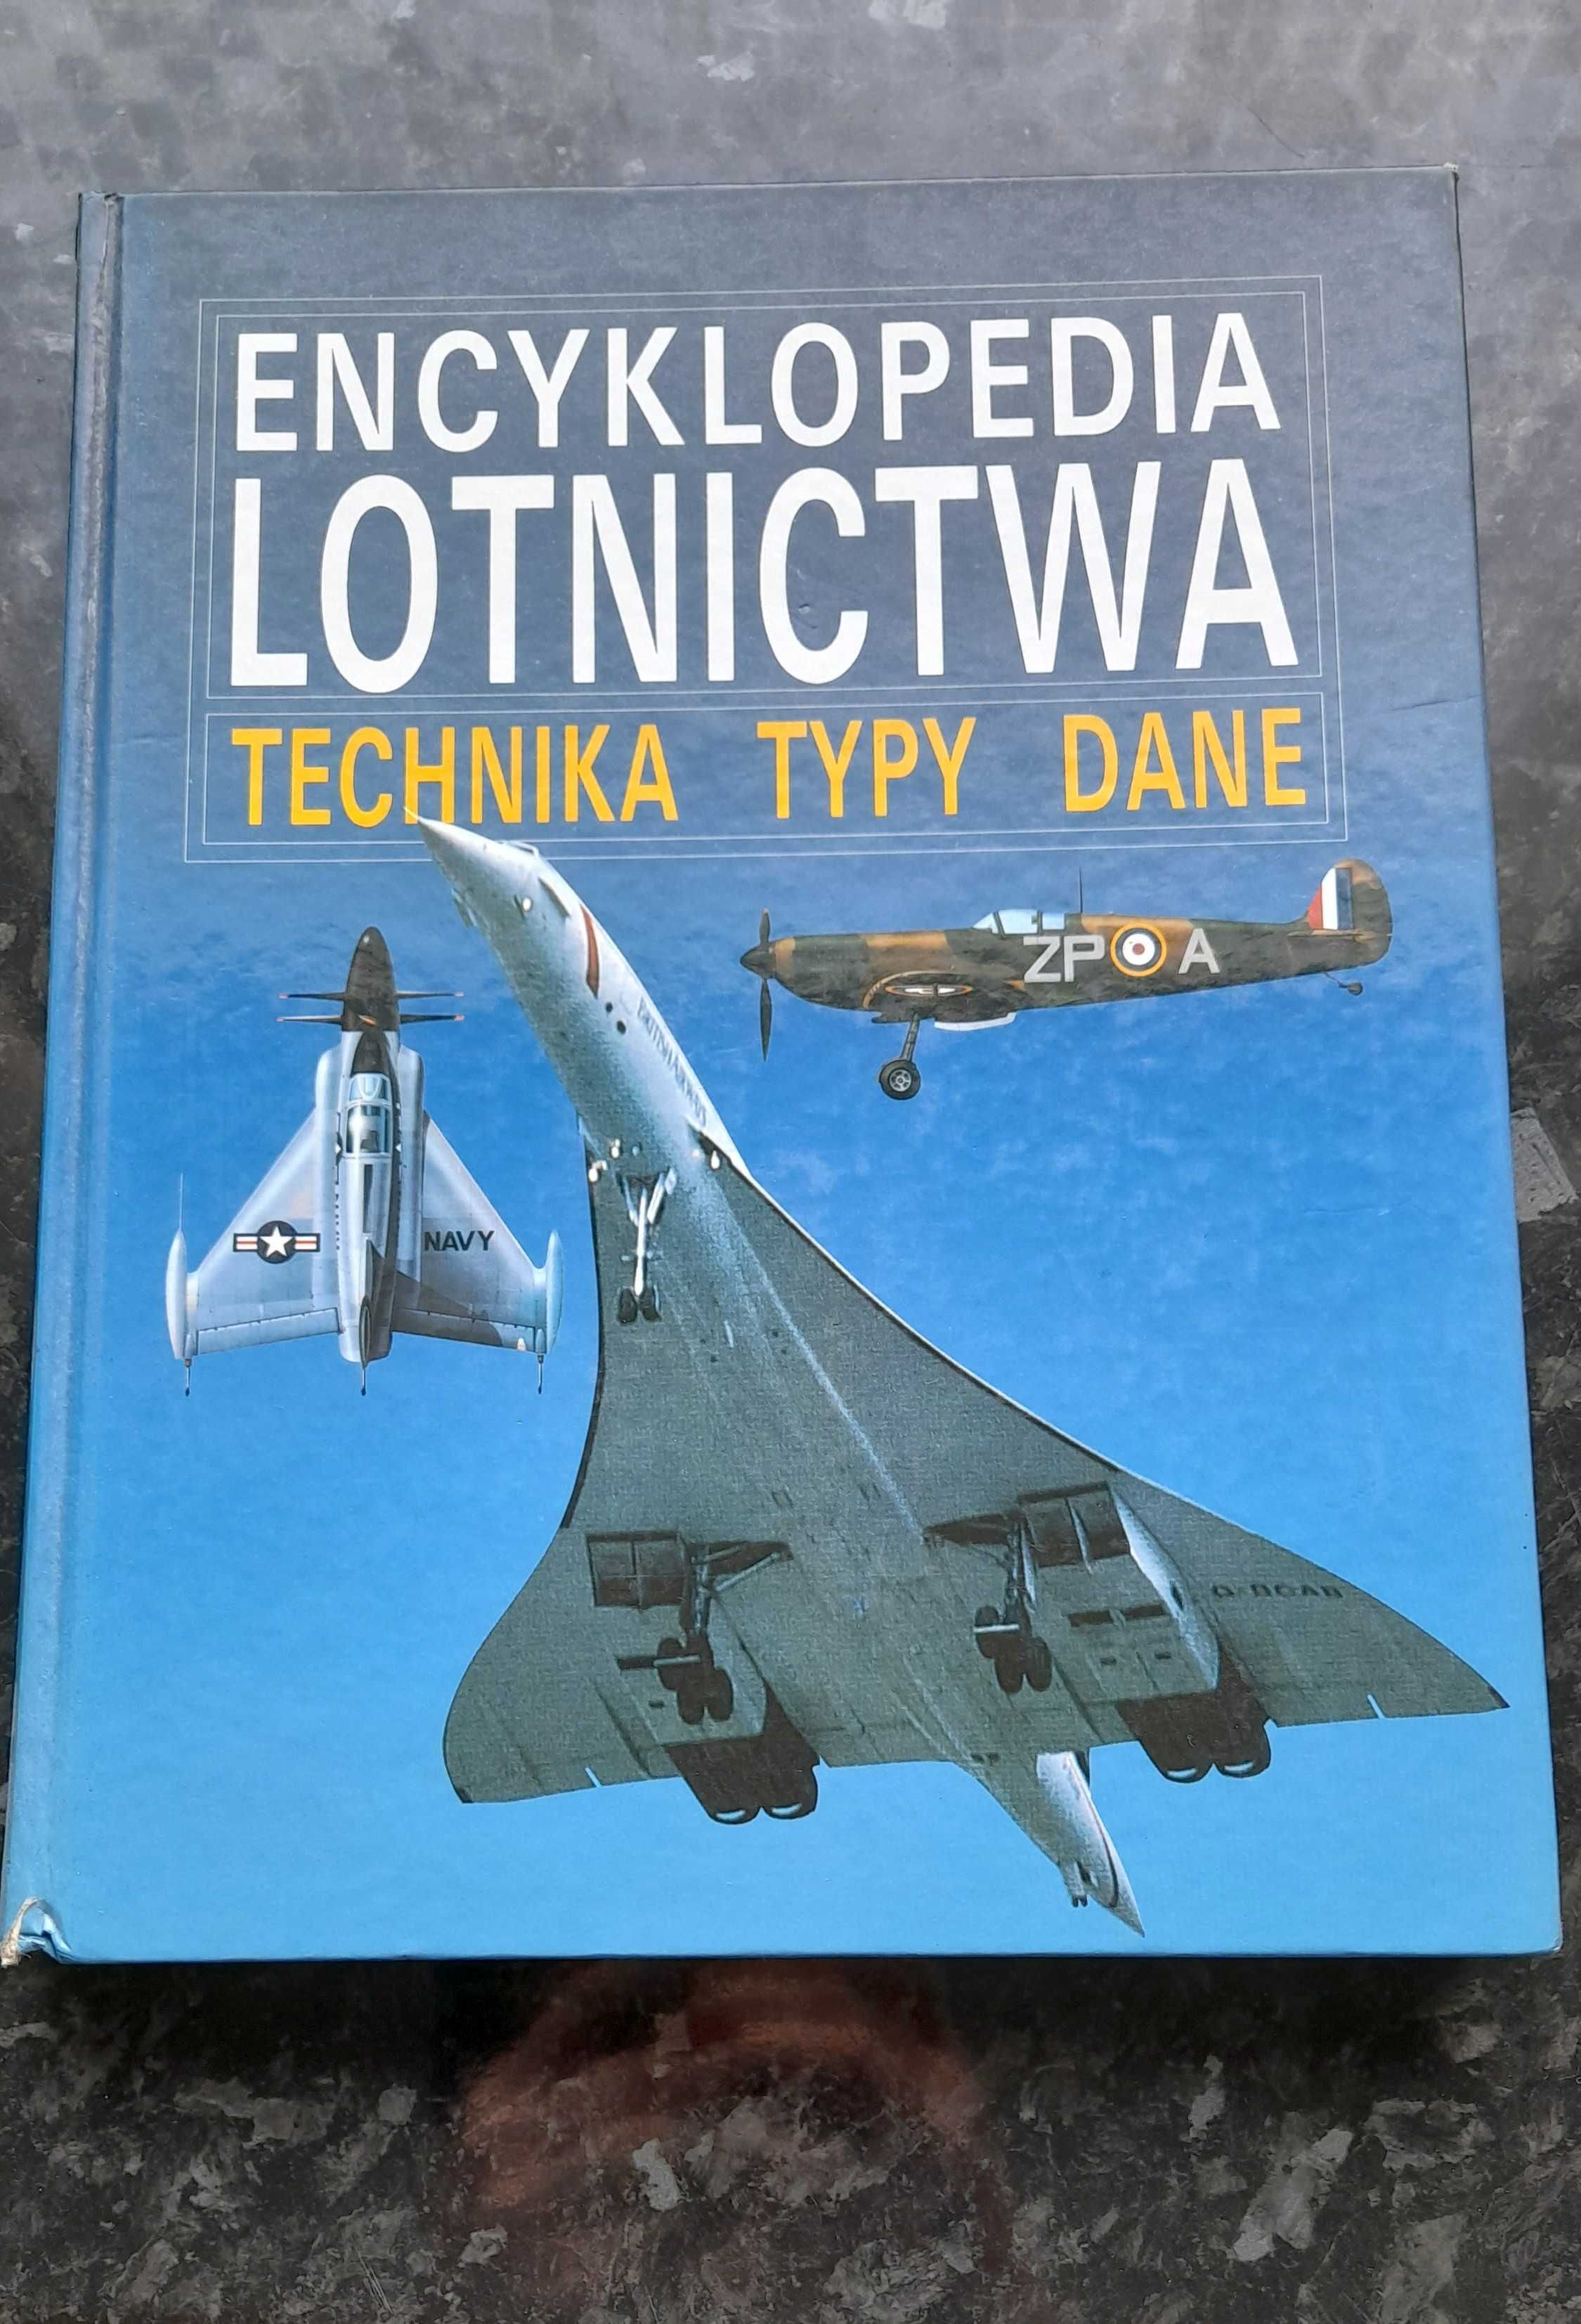 Encyklopedia lotnictwa - technika typy dane - Witold Wodziczko